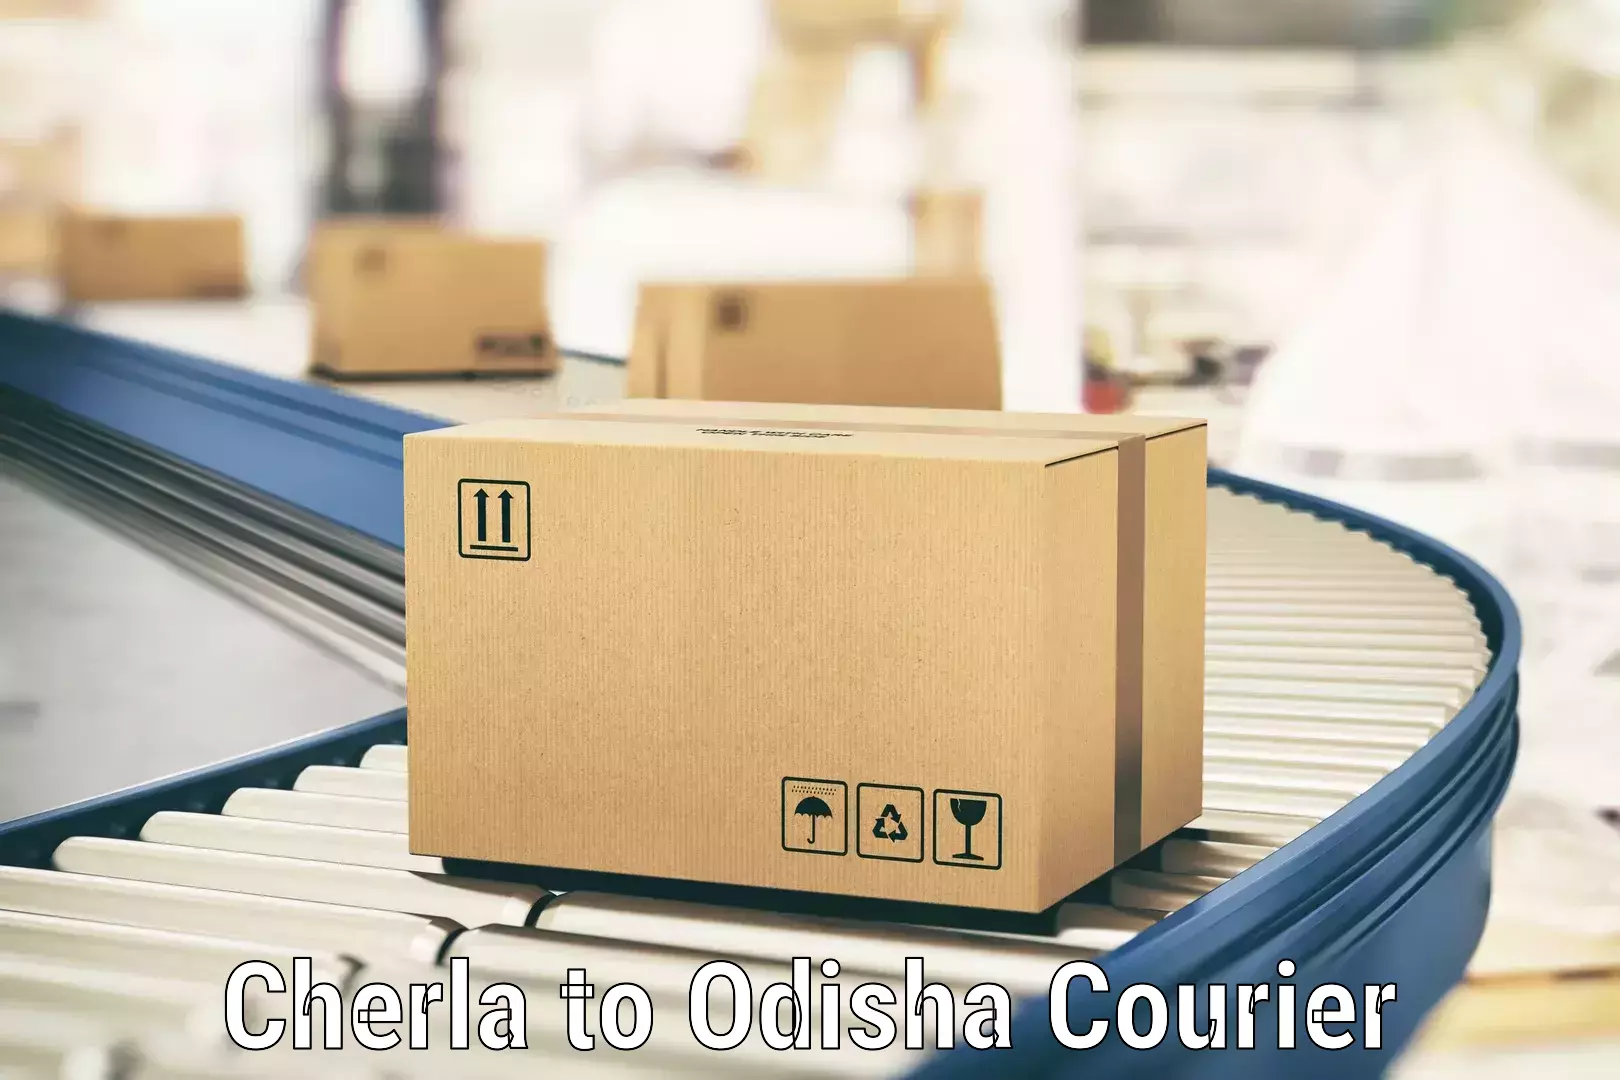 Business shipping needs Cherla to Dandisahi